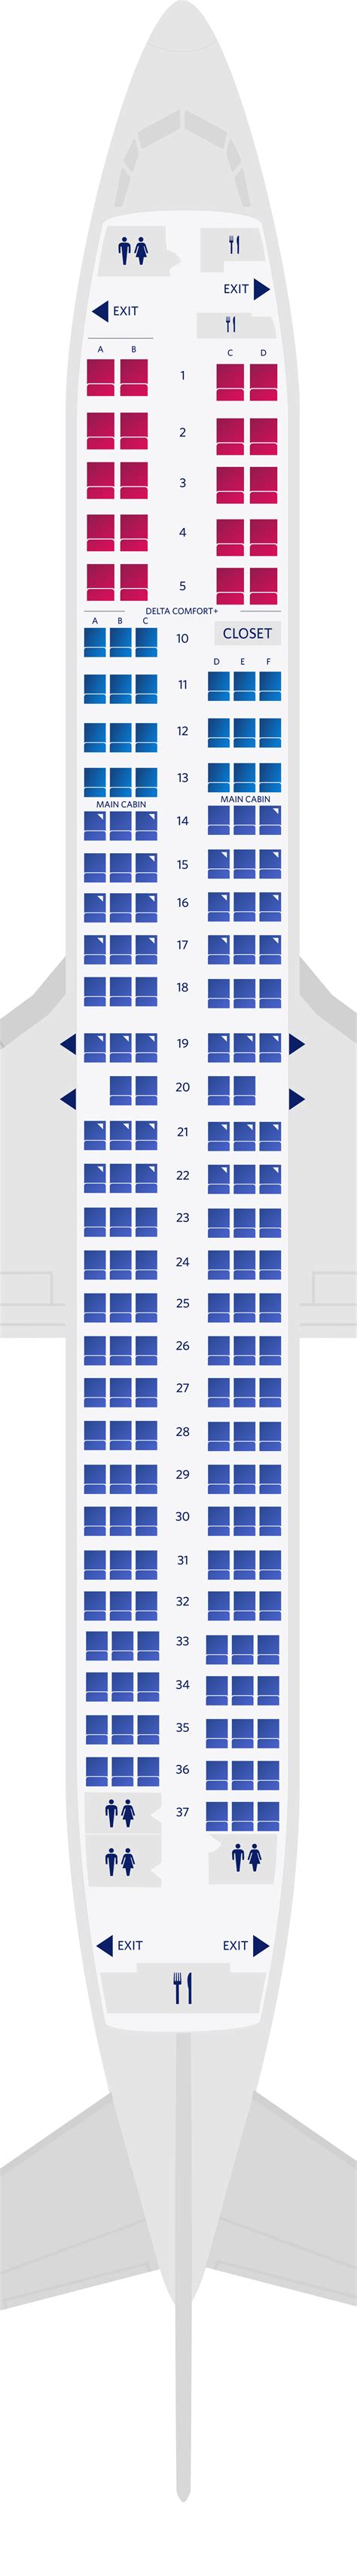 Delta International Flight Seat Map Elcho Table